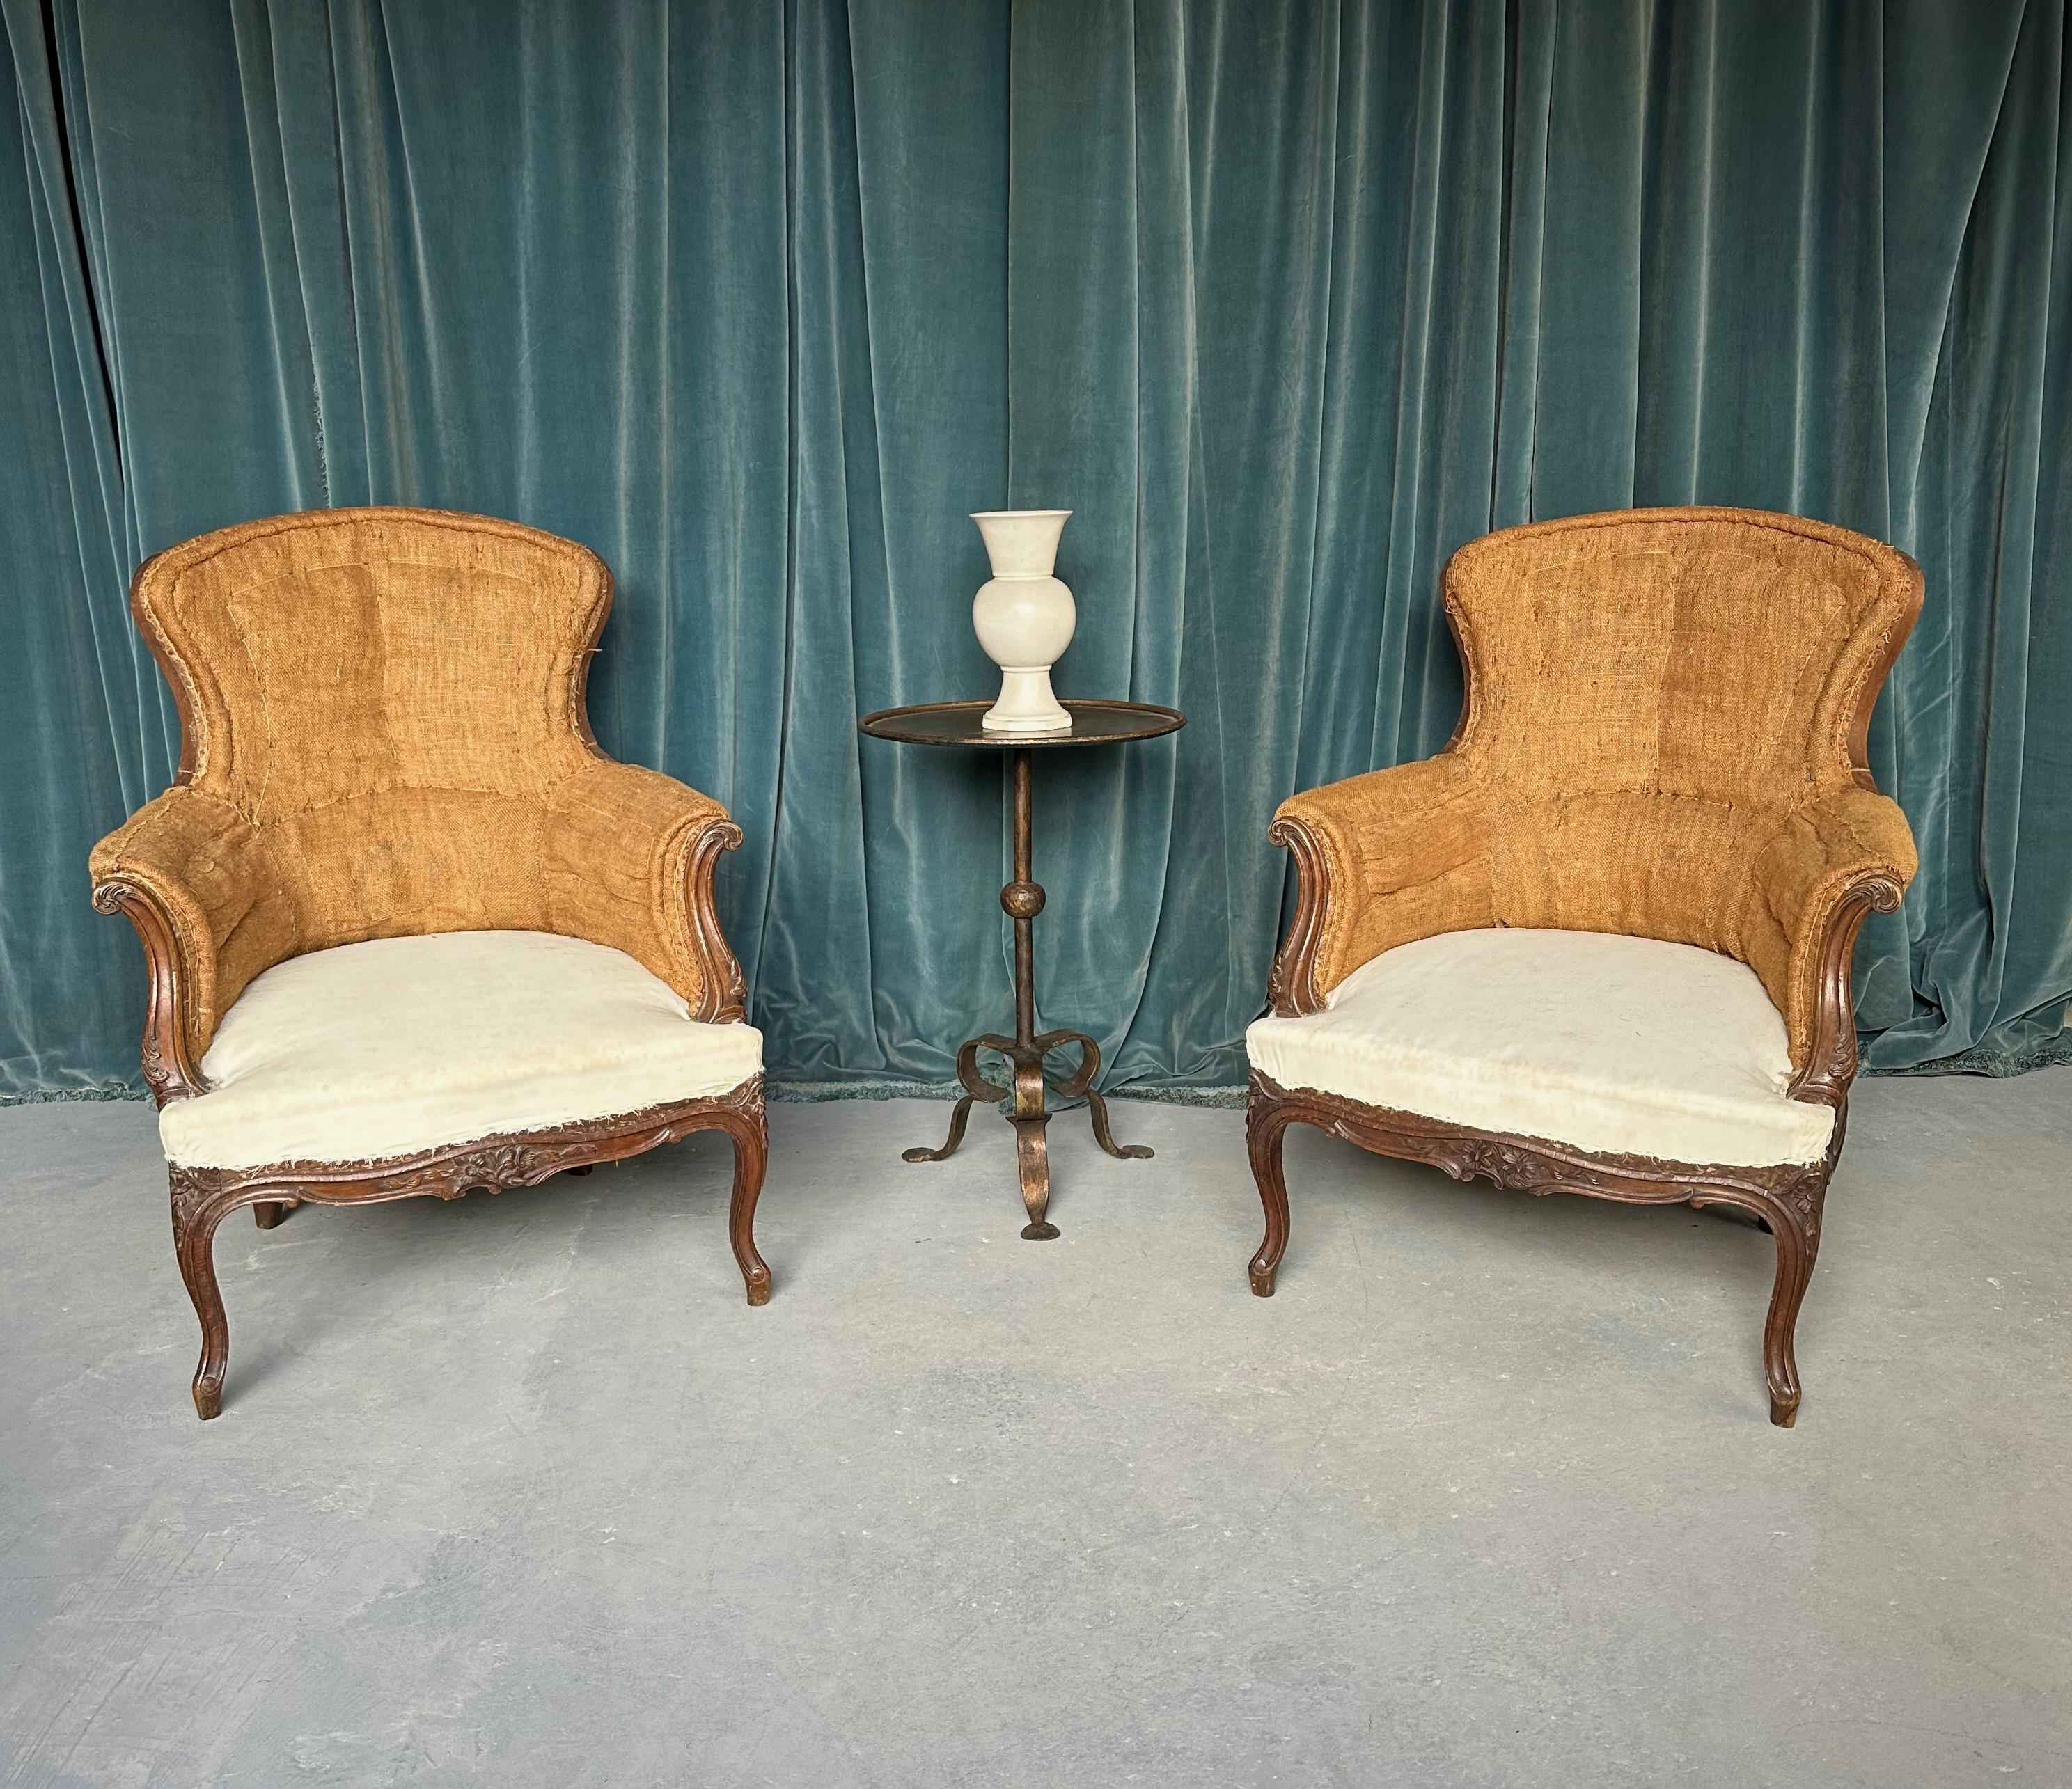 Une élégante paire de fauteuils français Napoléon III inspirés de la période Louis XV, avec des cadres en bois fruitier richement sculptés de motifs floraux. Les chaises ont été déshabillées jusqu'à la mousseline d'origine et sont prêtes à être